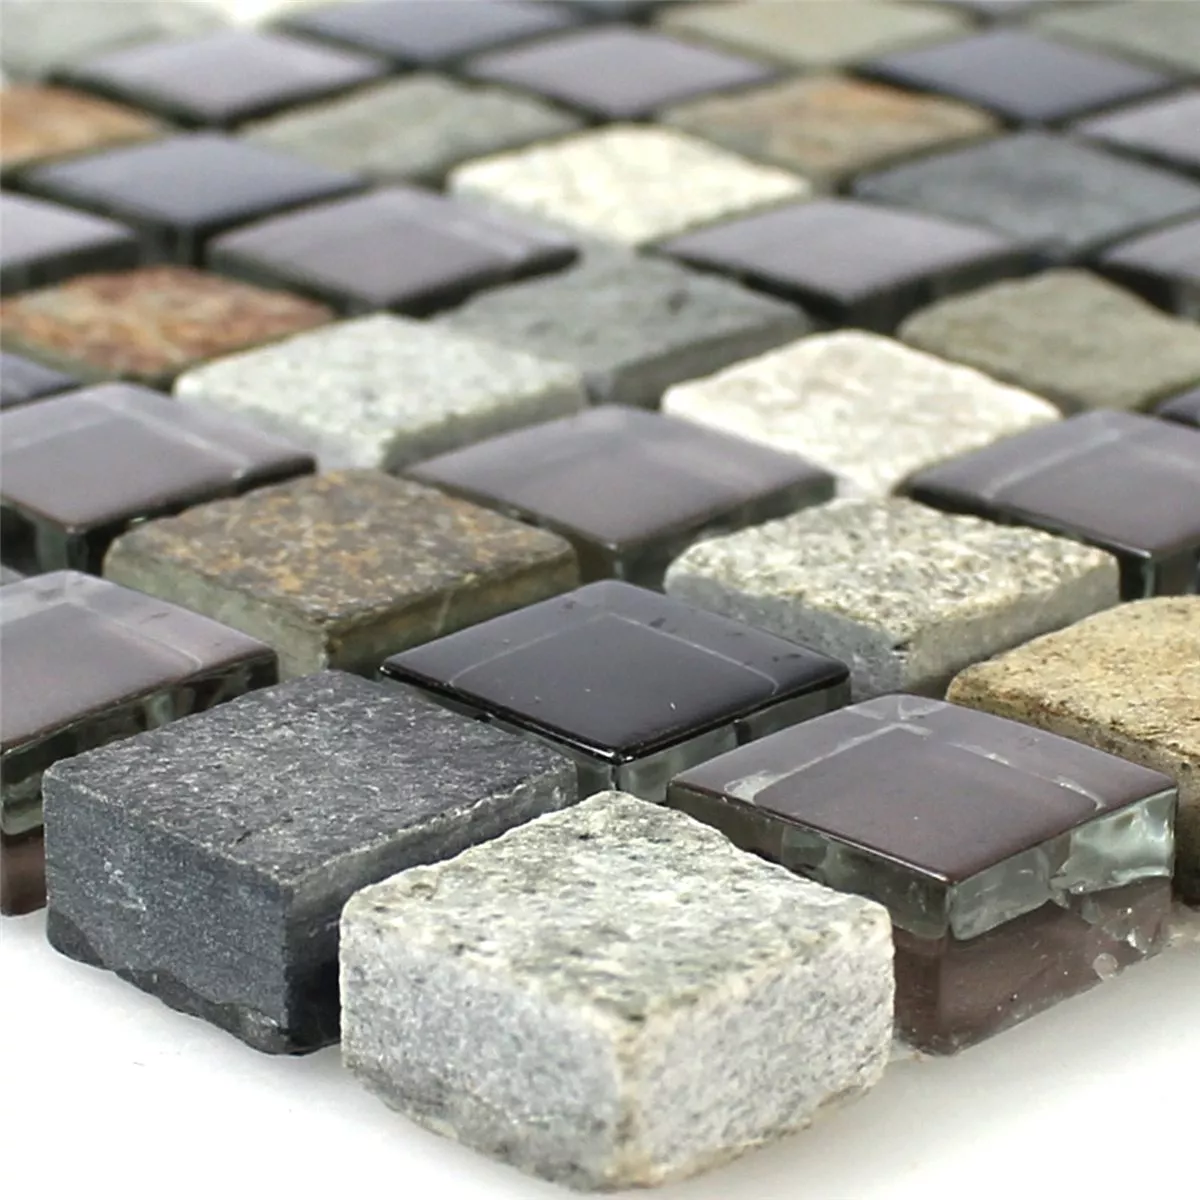 Muster von Mosaikfliesen Glas Quarzit Naturstein Grau Braun